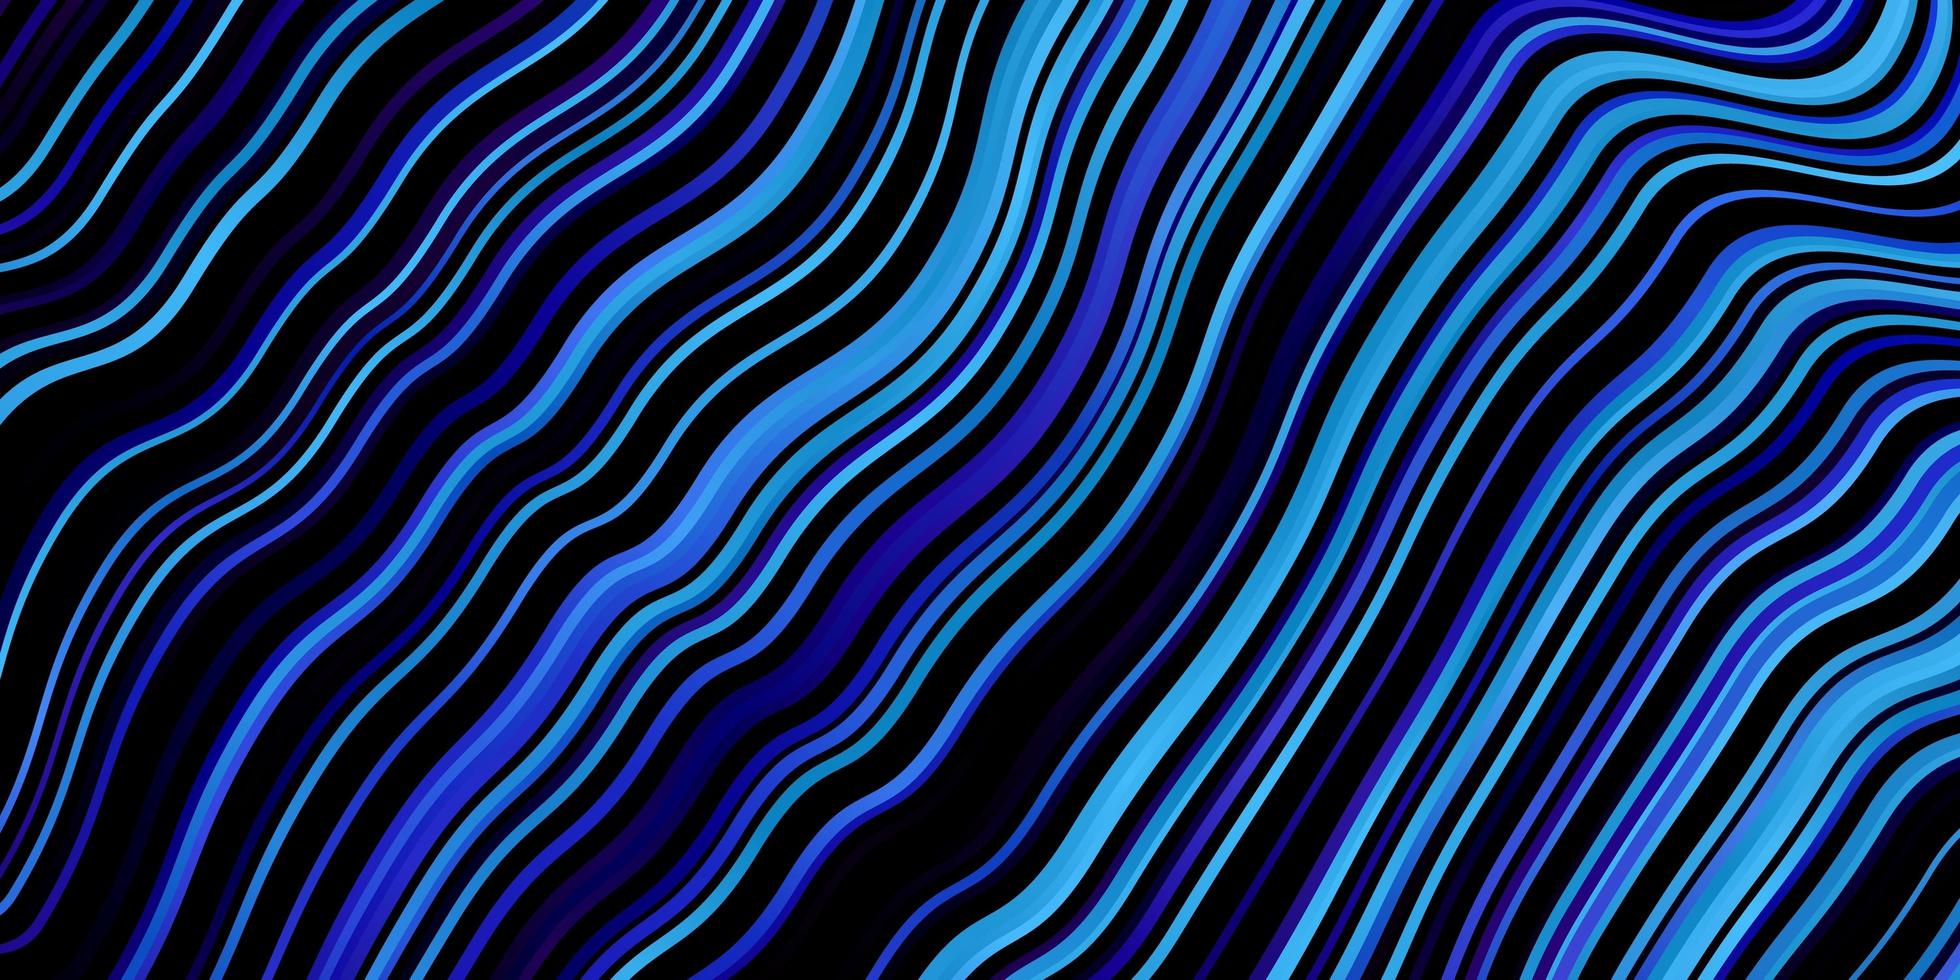 mörkrosa, blå vektorstruktur med kurvor. abstrakt illustration med lutningsbågar. mönster för webbplatser, målsidor. vektor